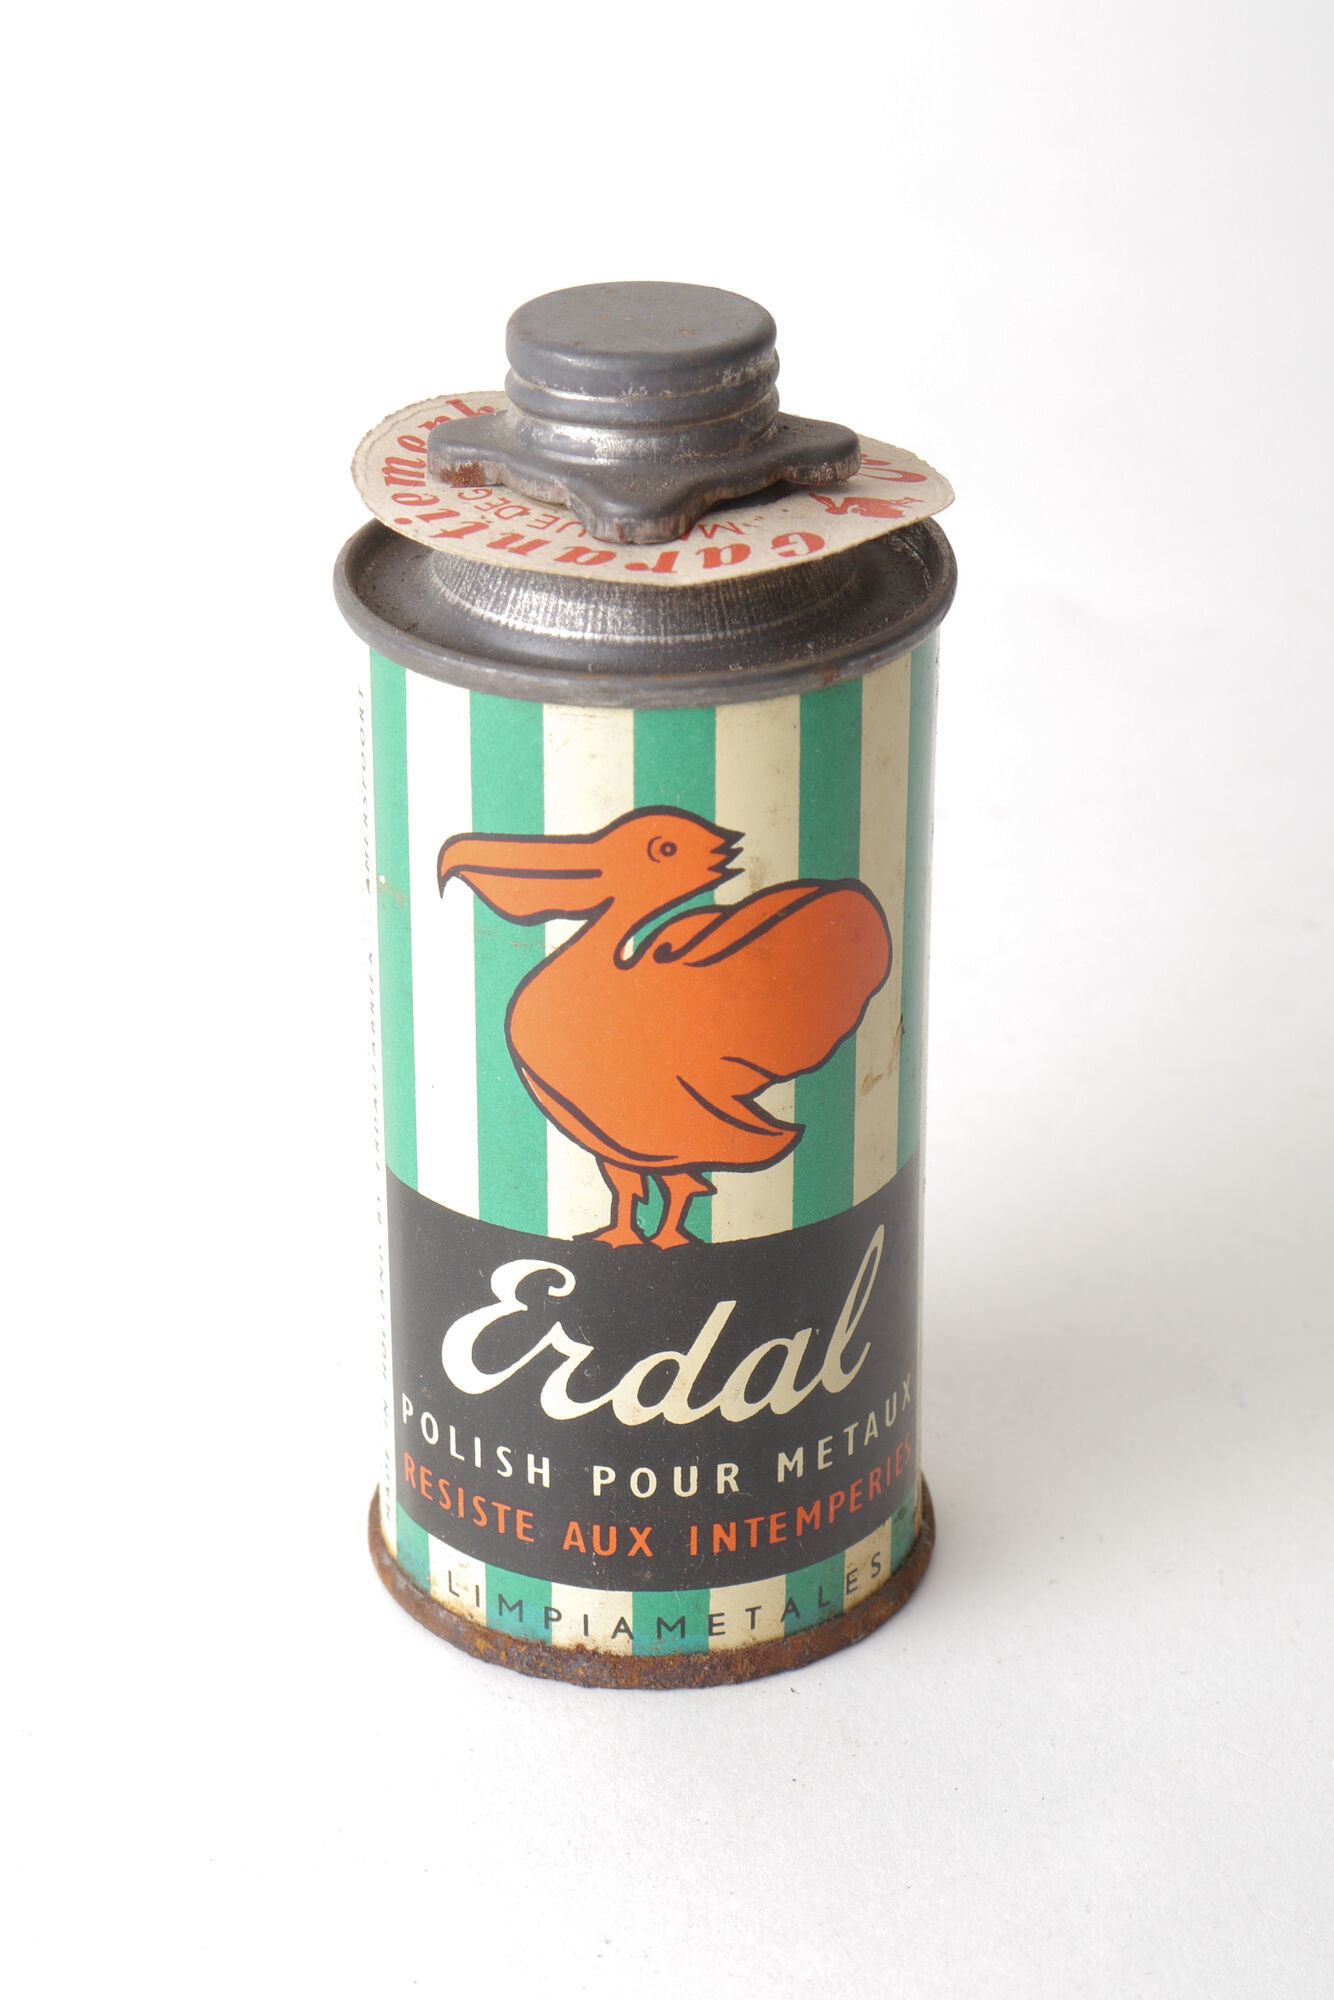 Blik met metaalbeits van het merk Erdal